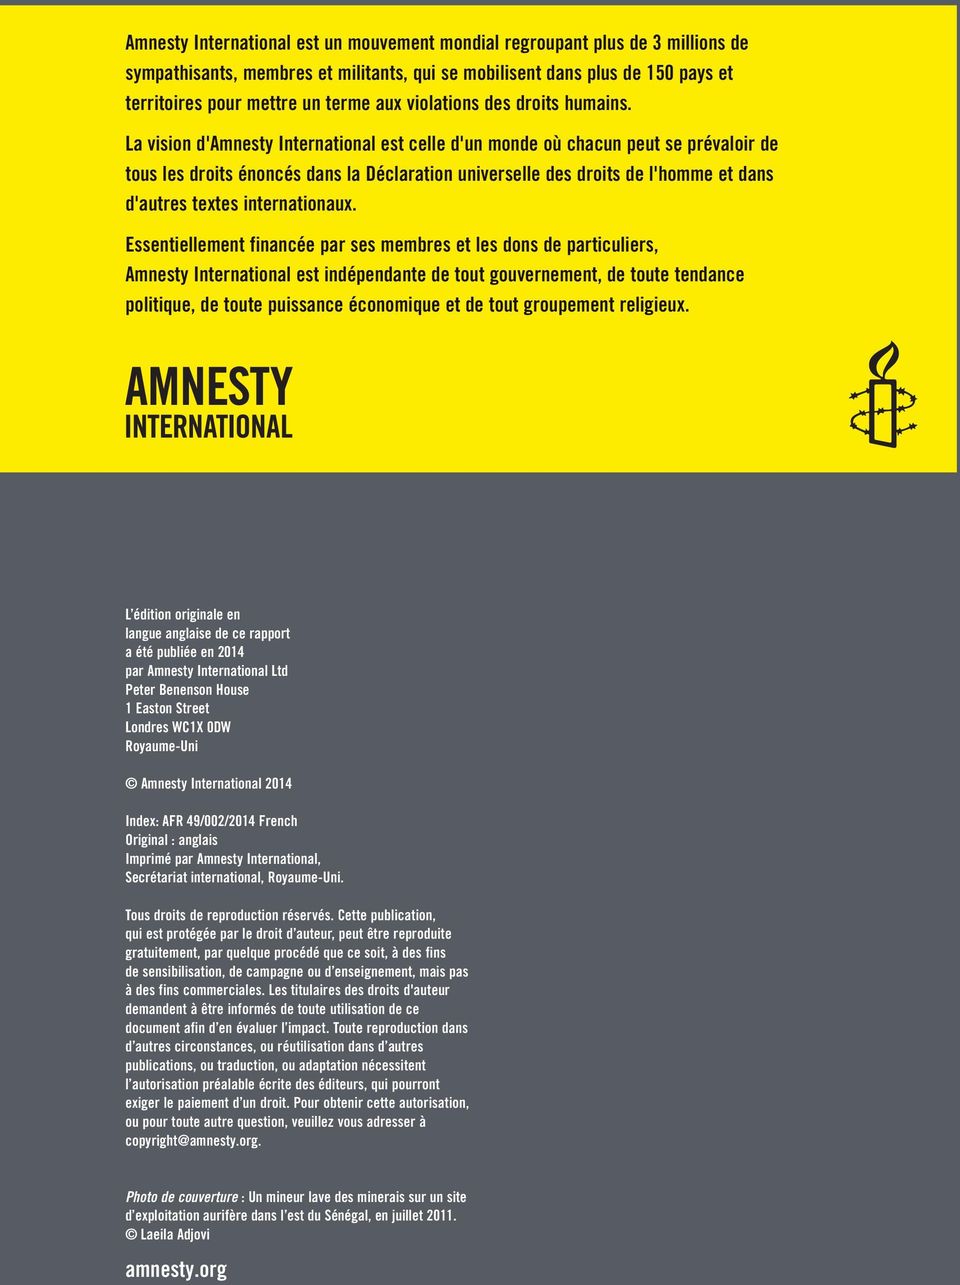 La vision d'amnesty International est celle d'un monde où chacun peut se prévaloir de tous les droits énoncés dans la Déclaration universelle des droits de l'homme et dans d'autres textes